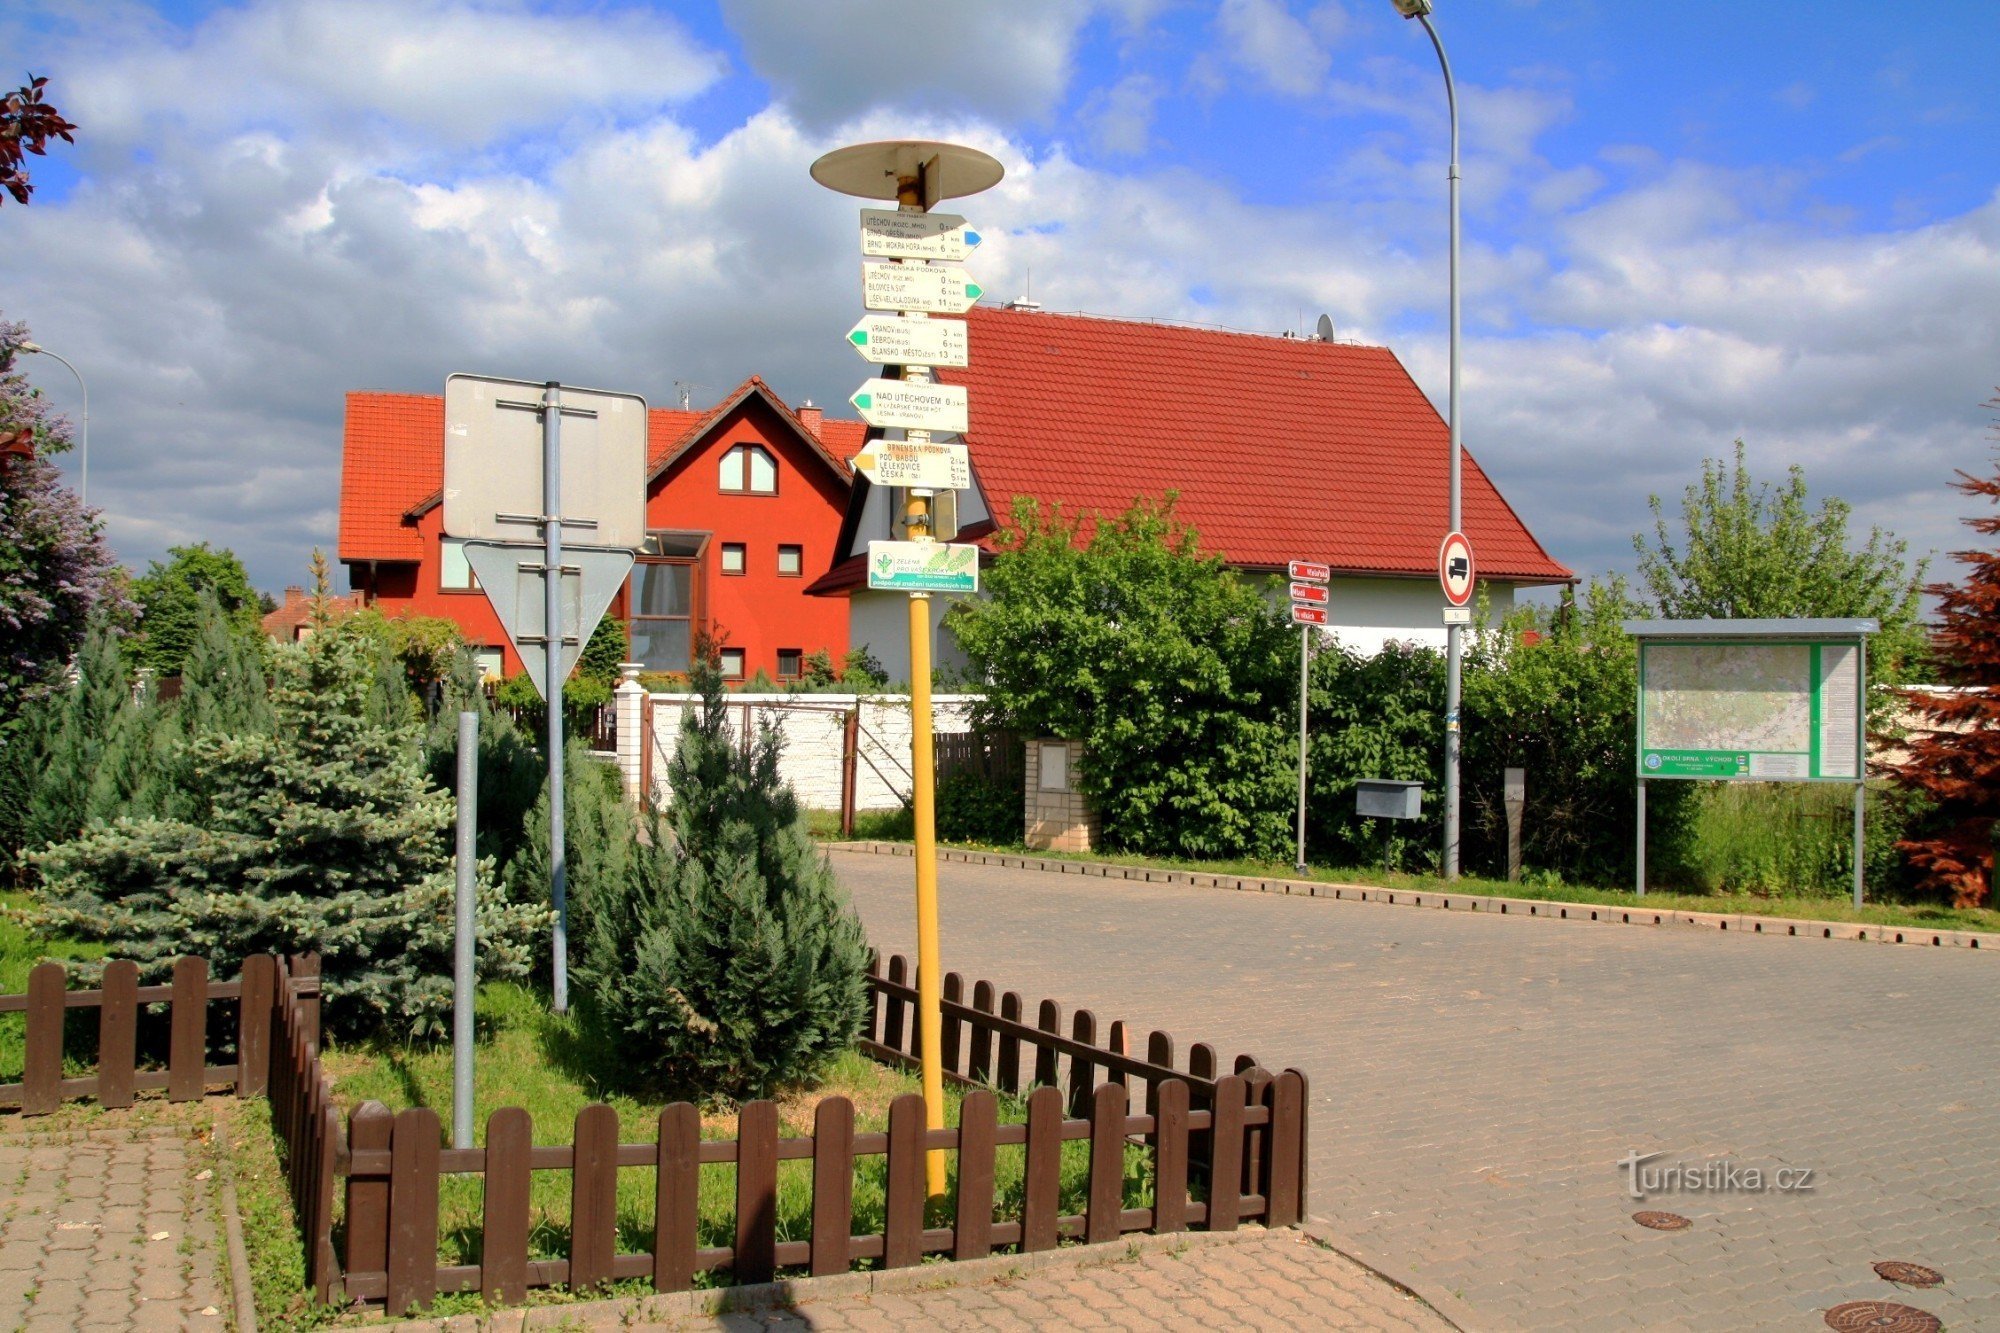 La principal señal turística en Útěchov